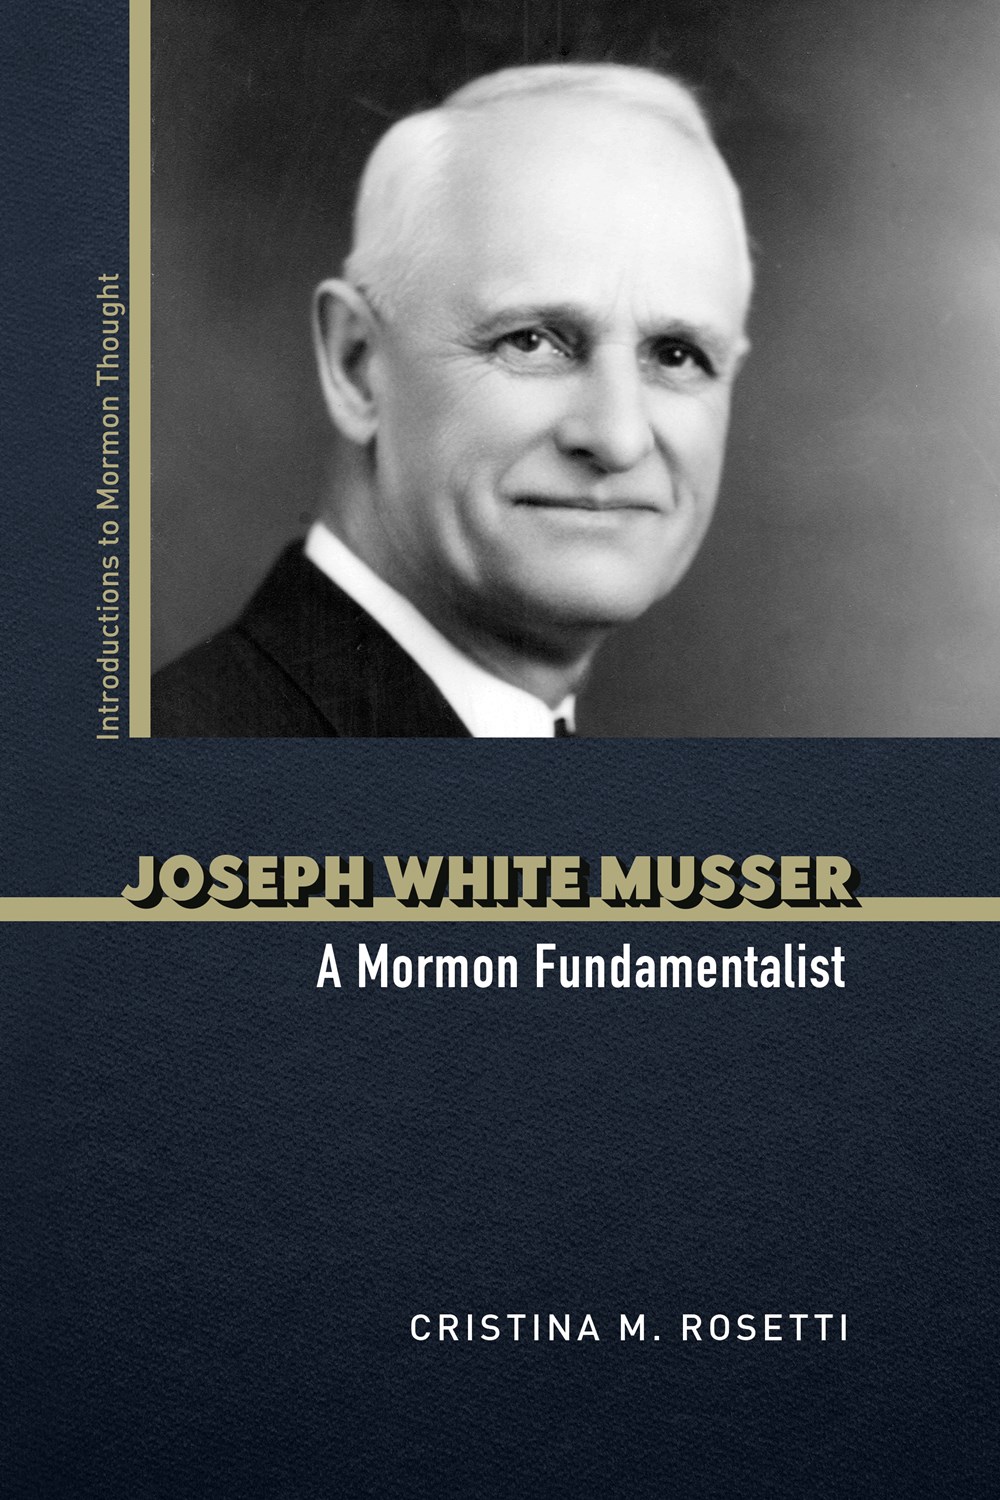 Joseph White Musser: A Mormon Fundamentalist